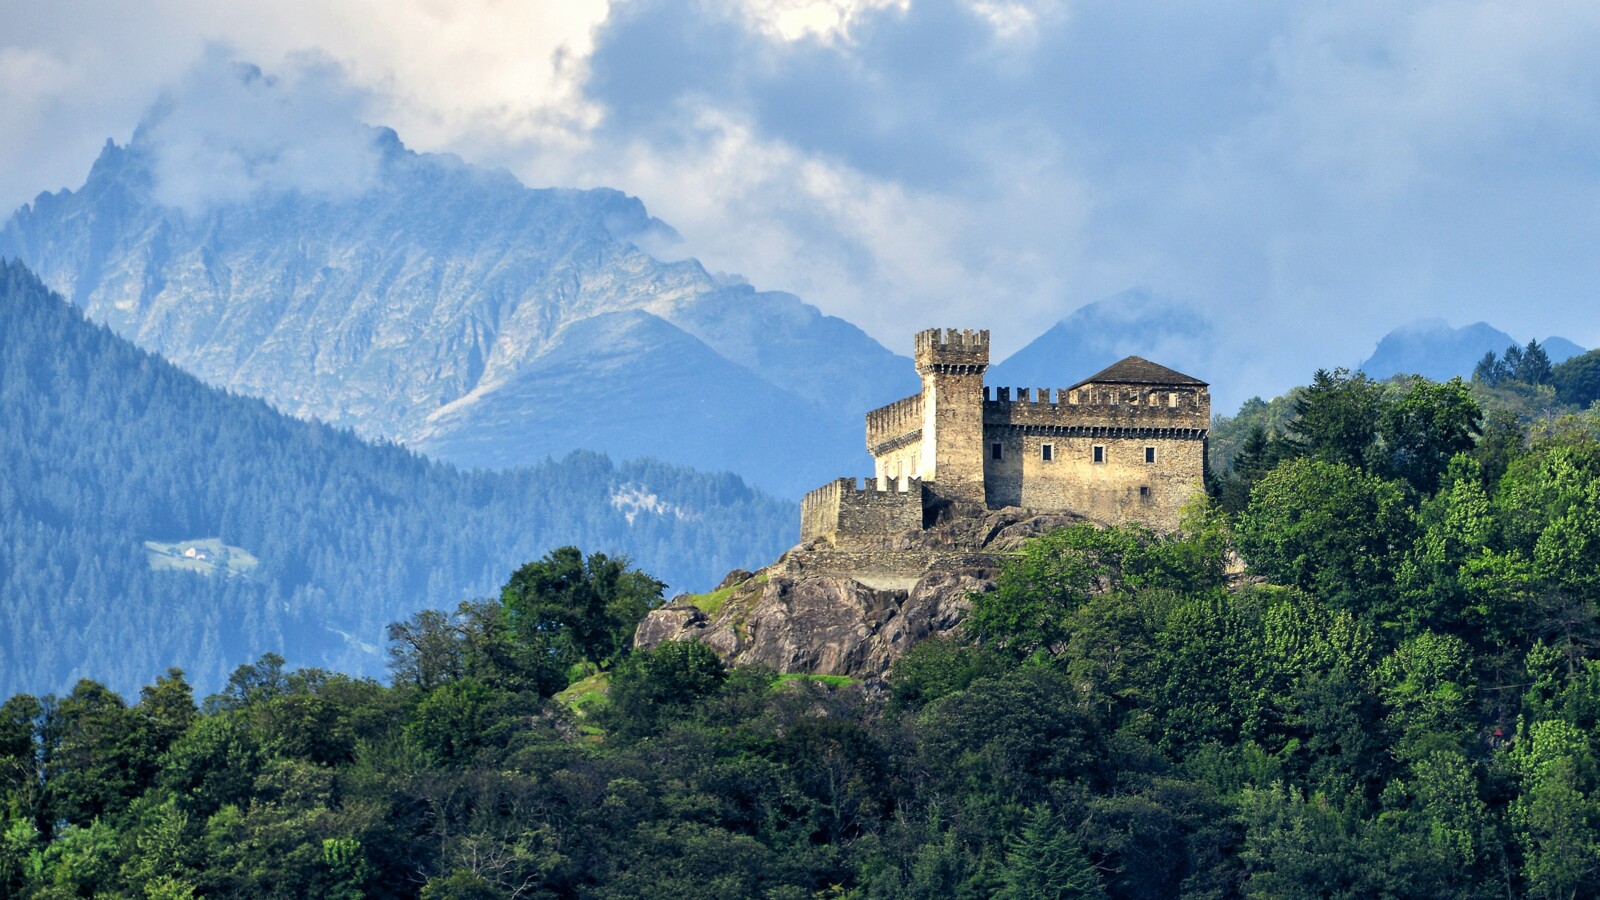 Festung von Bellinzona - Castello di Sasso Corbaro